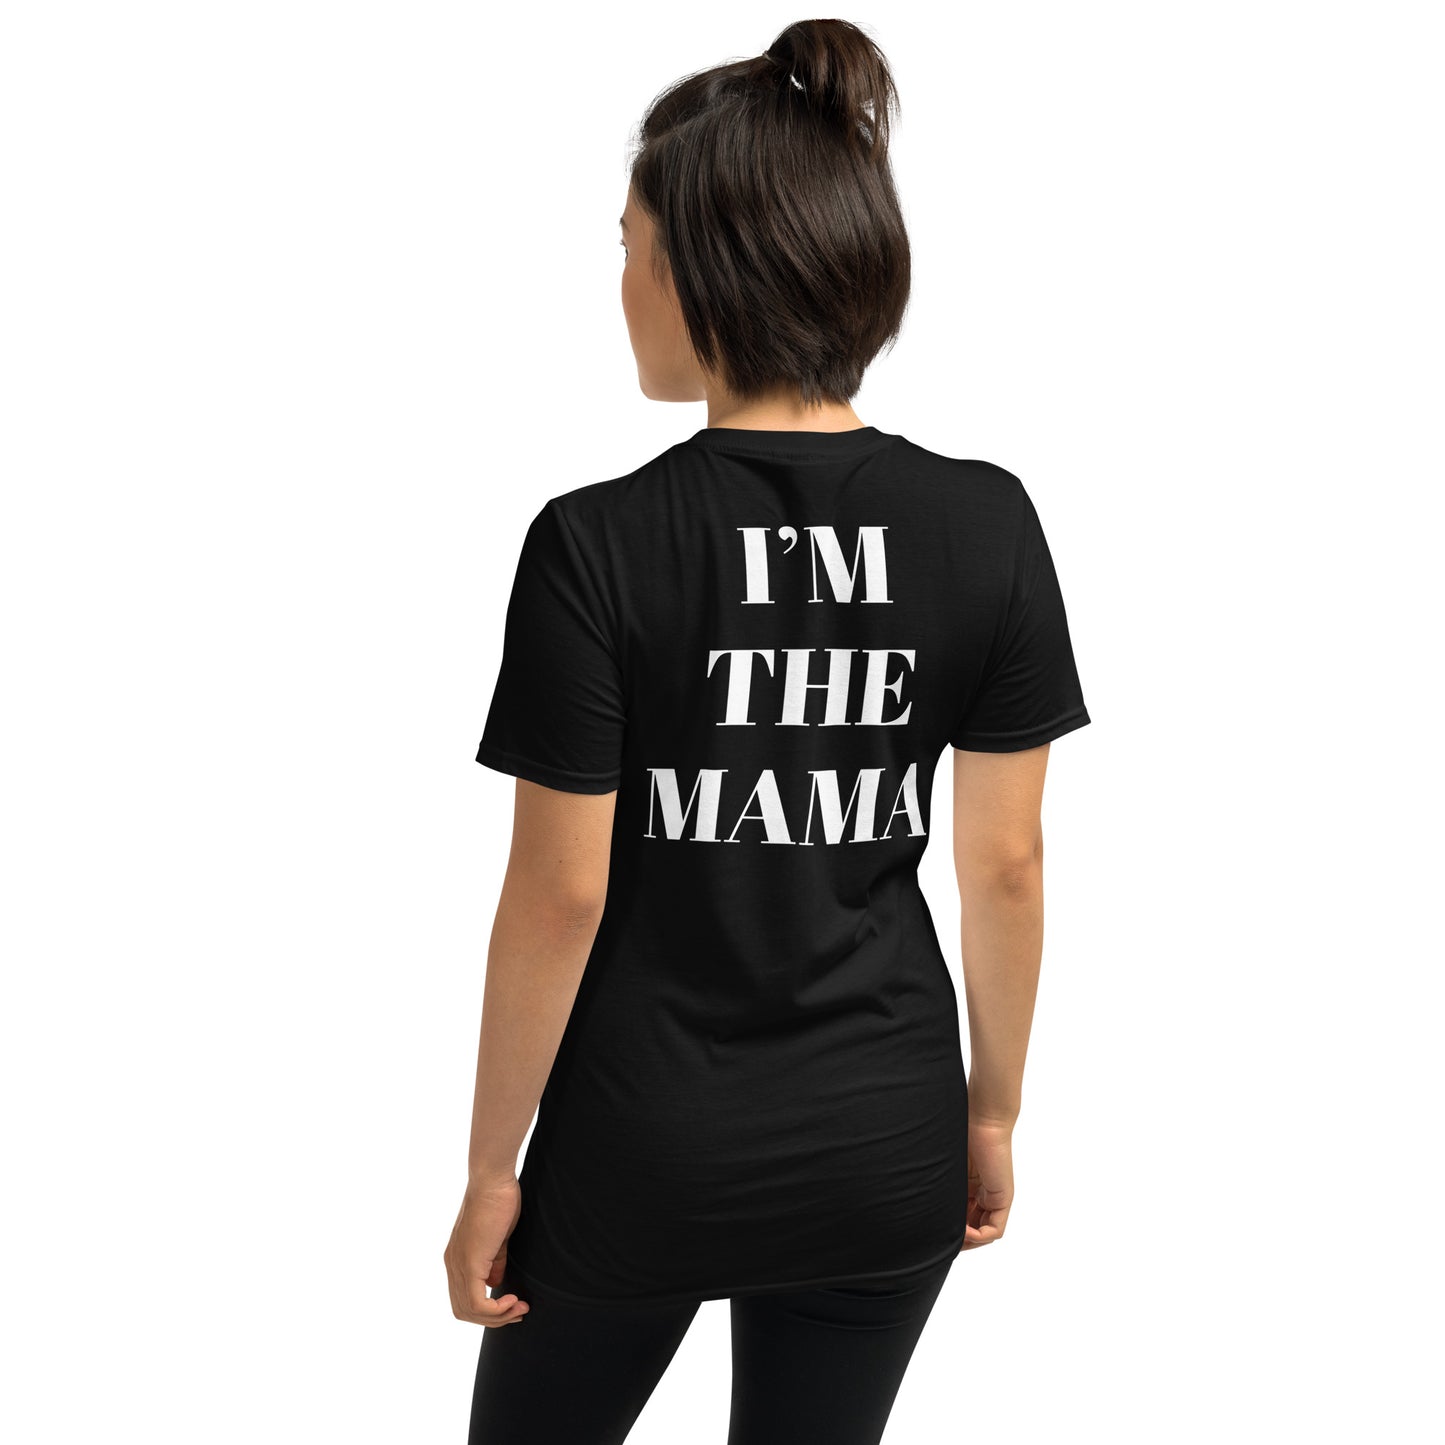 I’m the mama Short-Sleeve Unisex T-Shirt